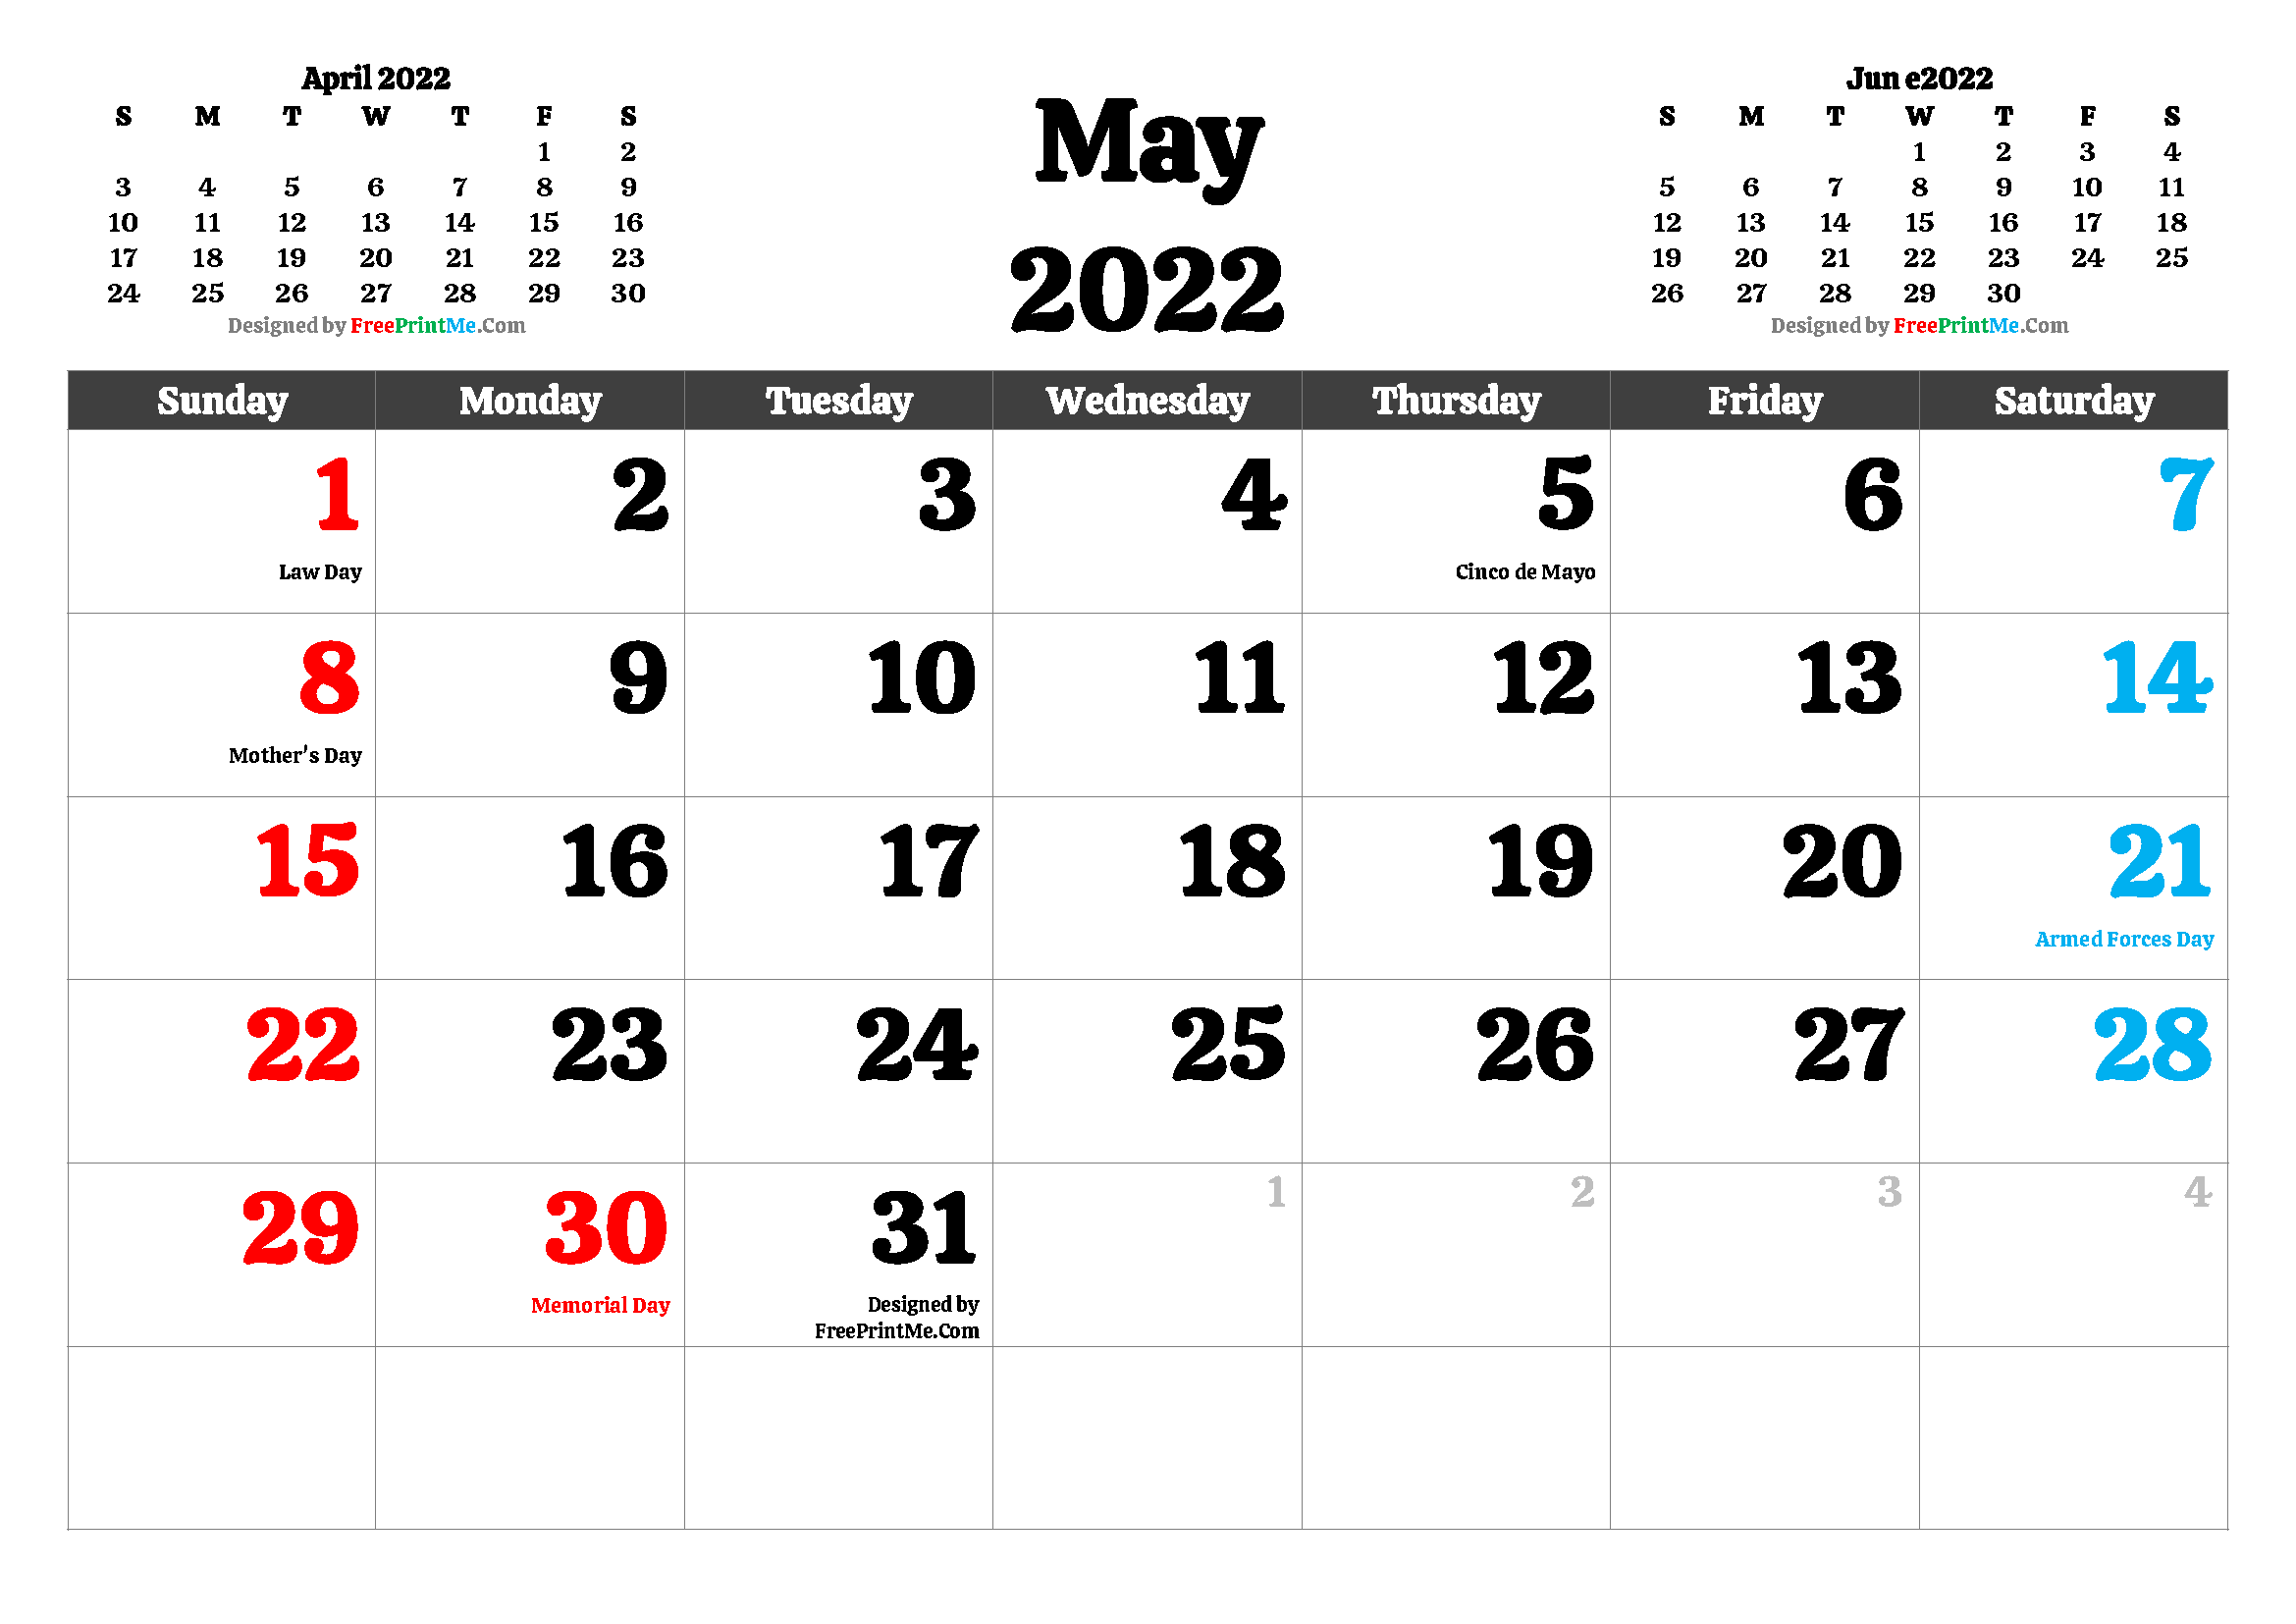 Free Printable 2022 Calendar With Us Holidays Free Printable May 2022 Calendar Pdf And Image